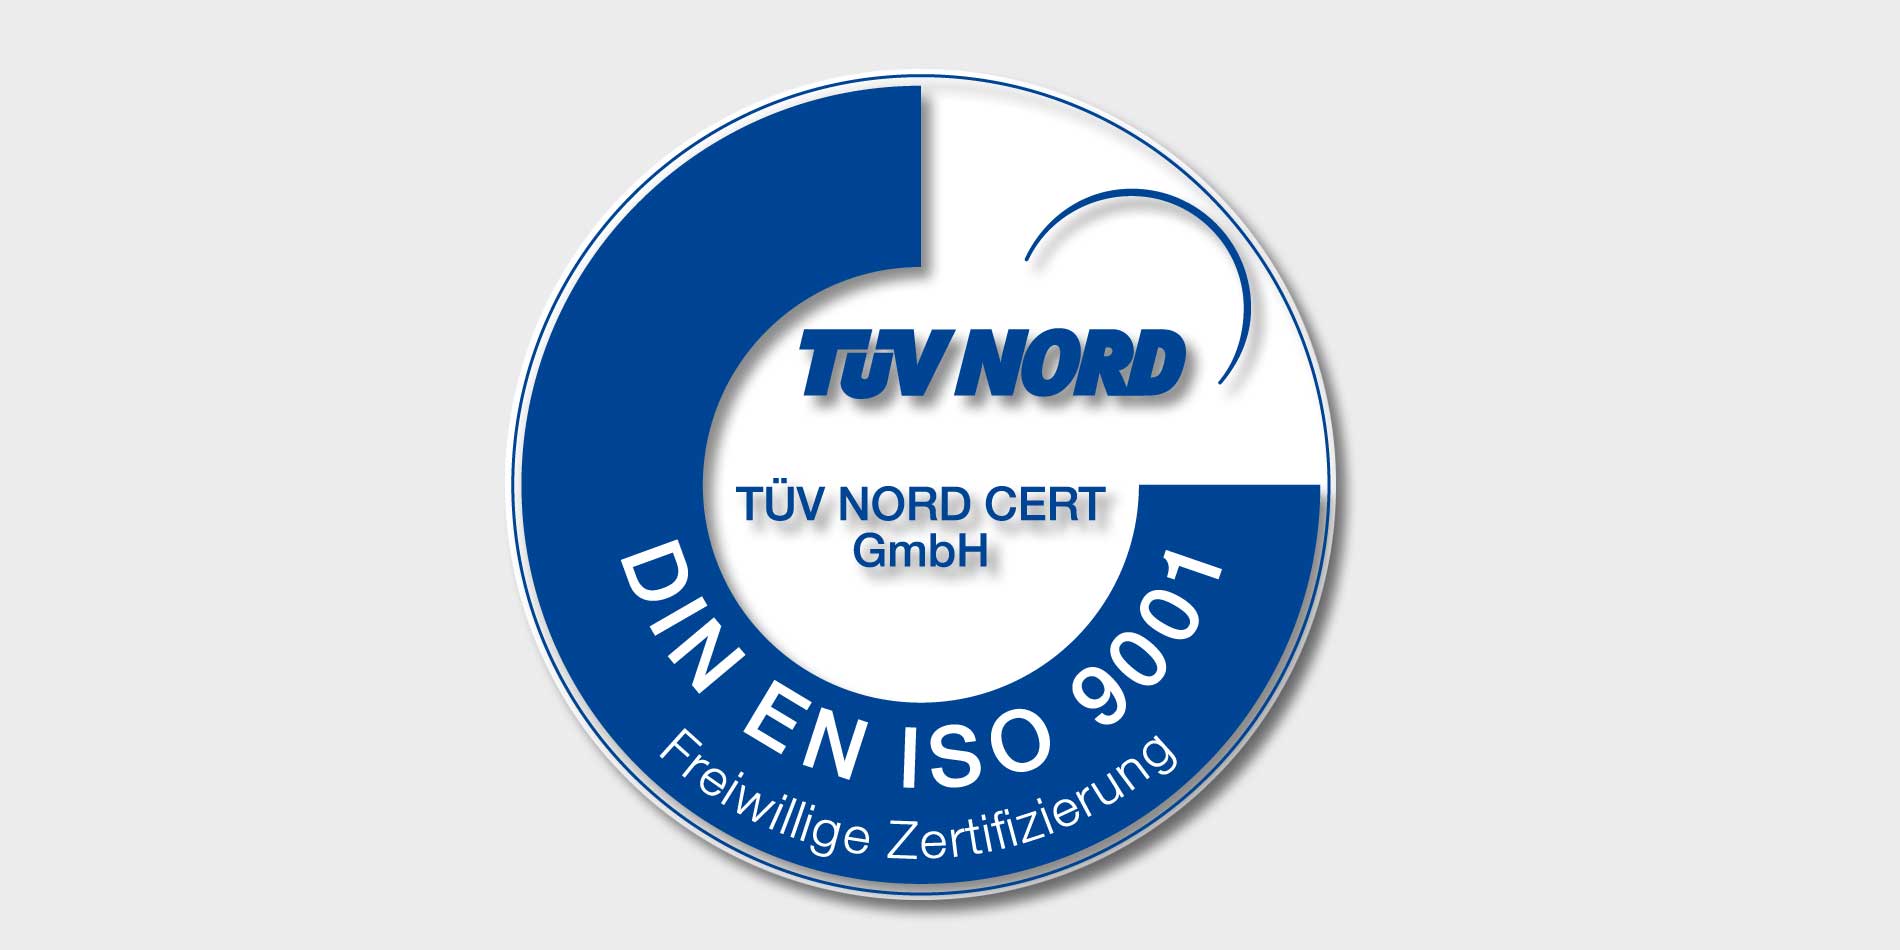 Erfolgreich rezertifiziert - jetzt nach der DIN EN ISO 9001 : 2008